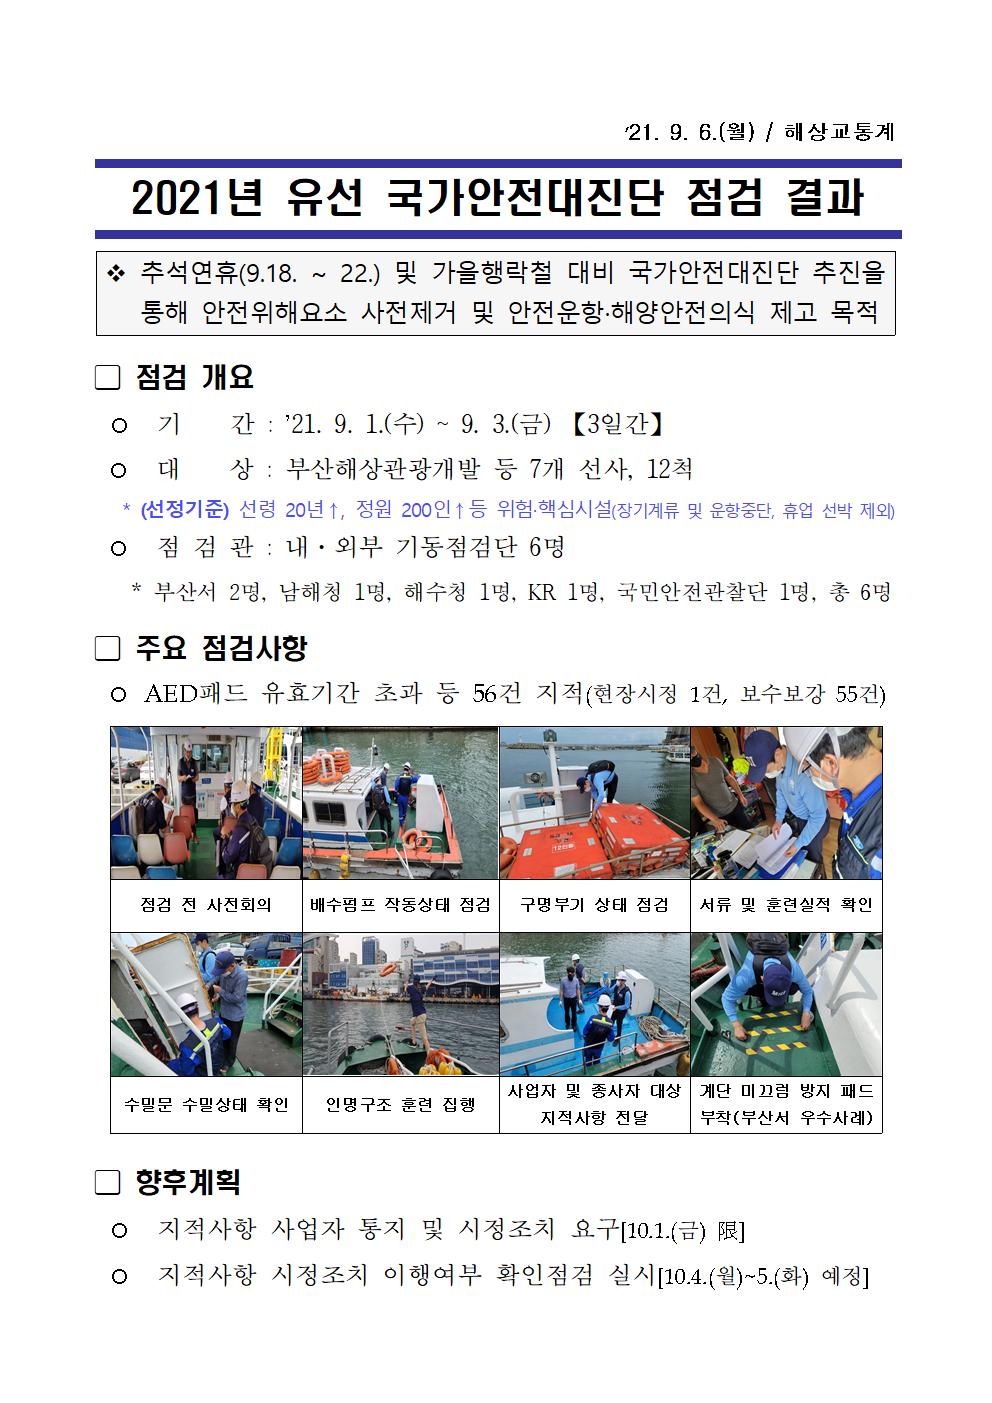 부산서 유선 국가안전대진단 점검결과